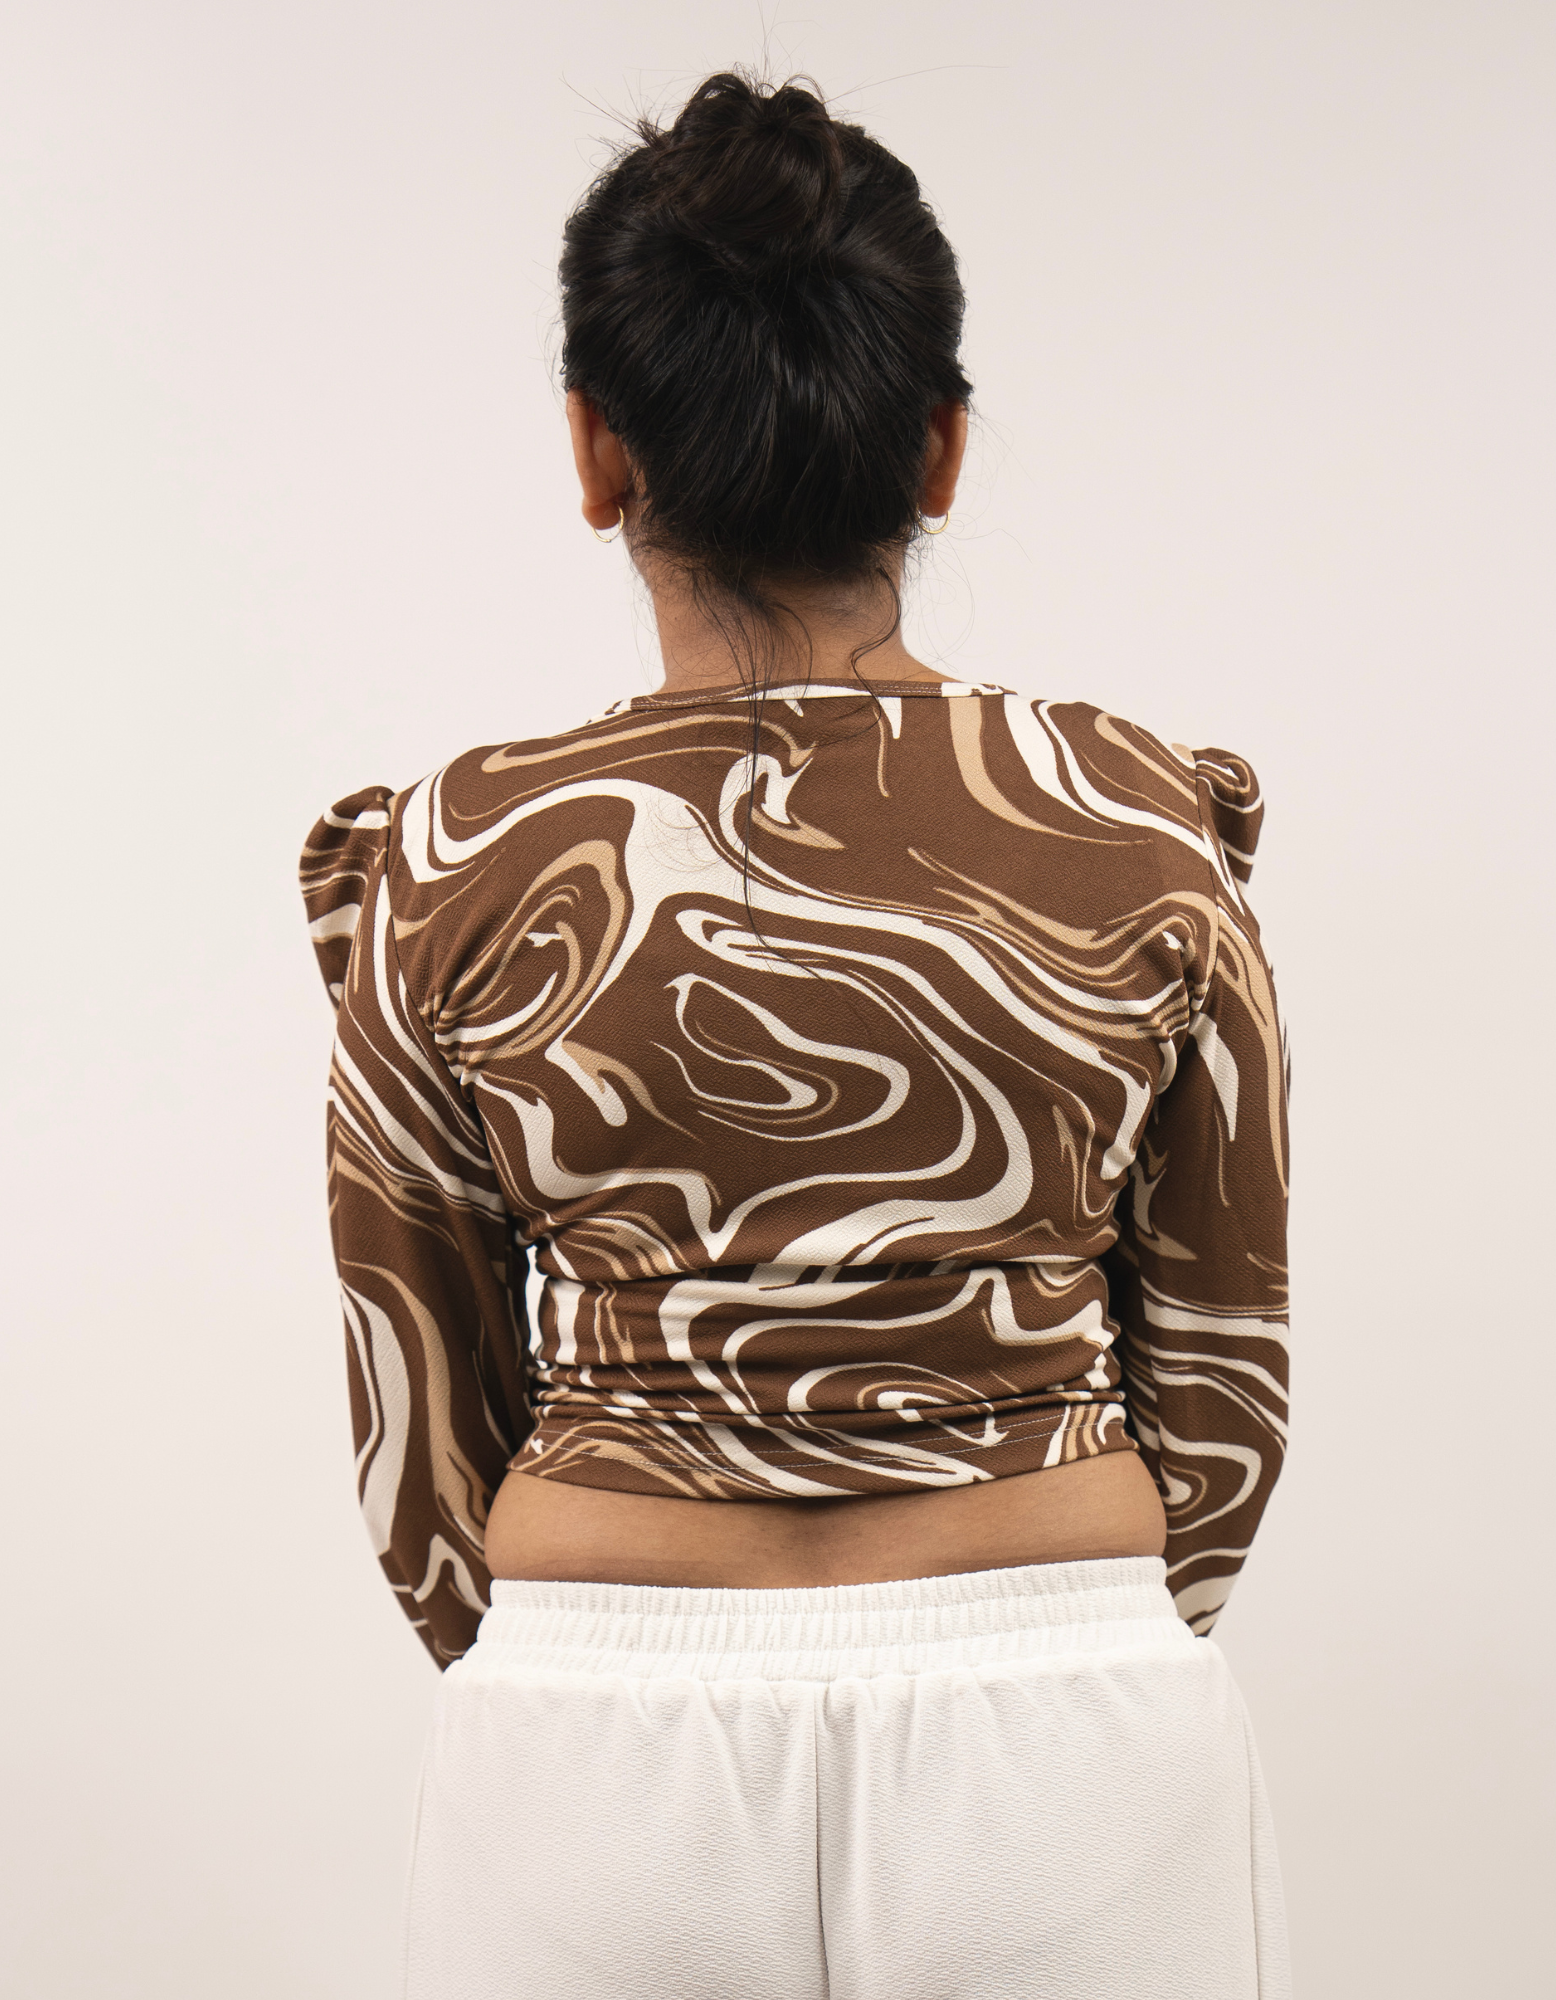 Bae N Bruh - Full Sleeves Marble Print V Neck Top back view